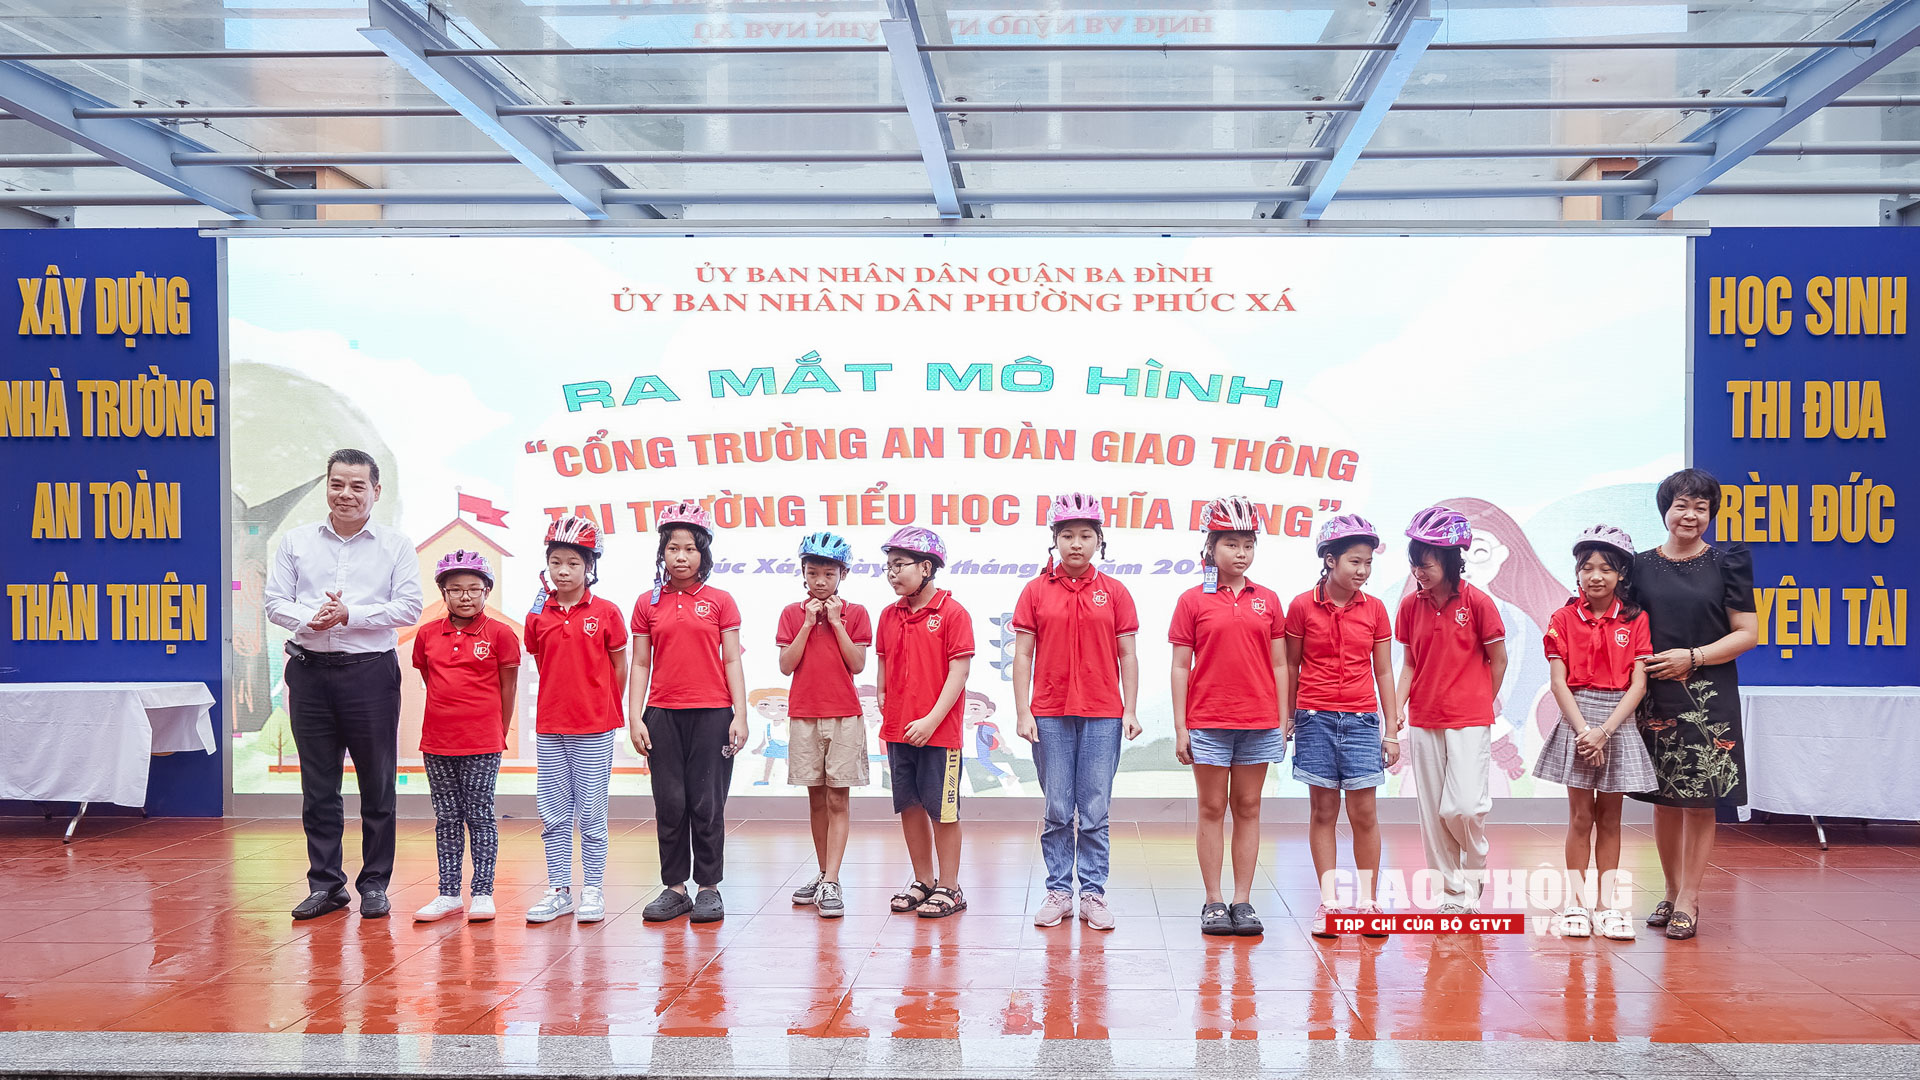 Hà Nội triển khai mô hình "Cổng trường ATGT" tại 9 điểm trường ở quận Ba Đình- Ảnh 8.